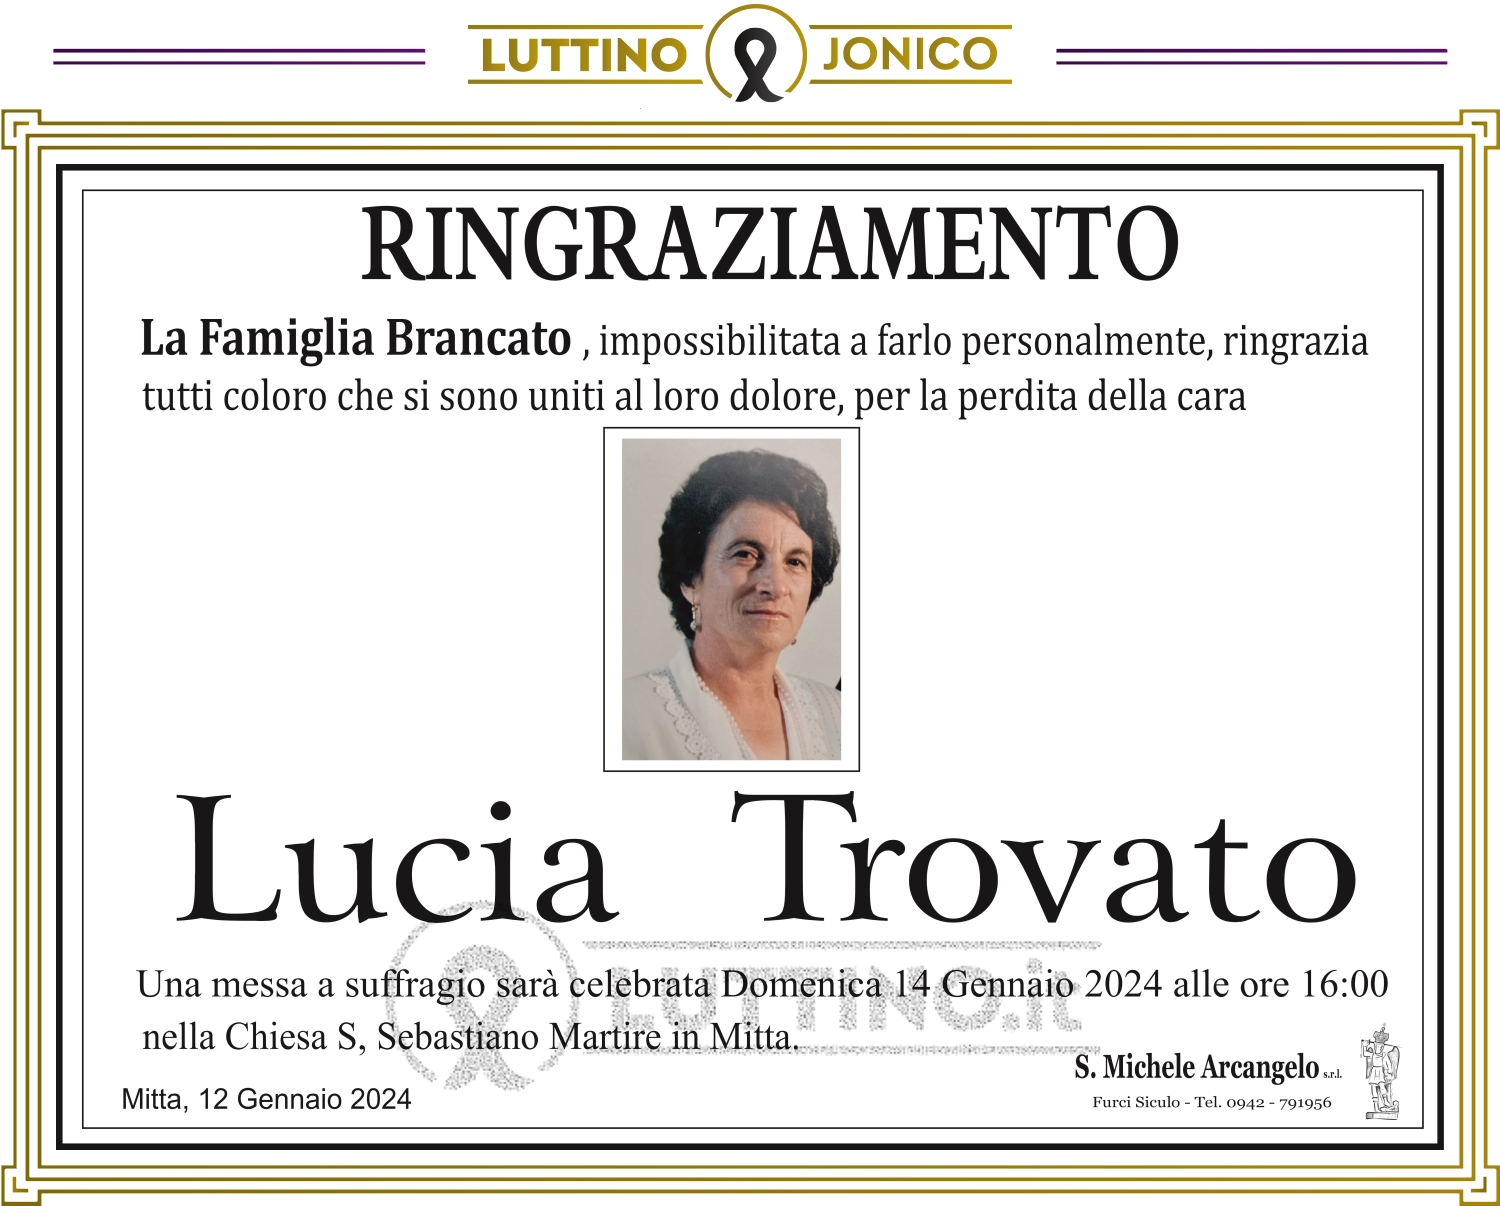 Lucia Trovato